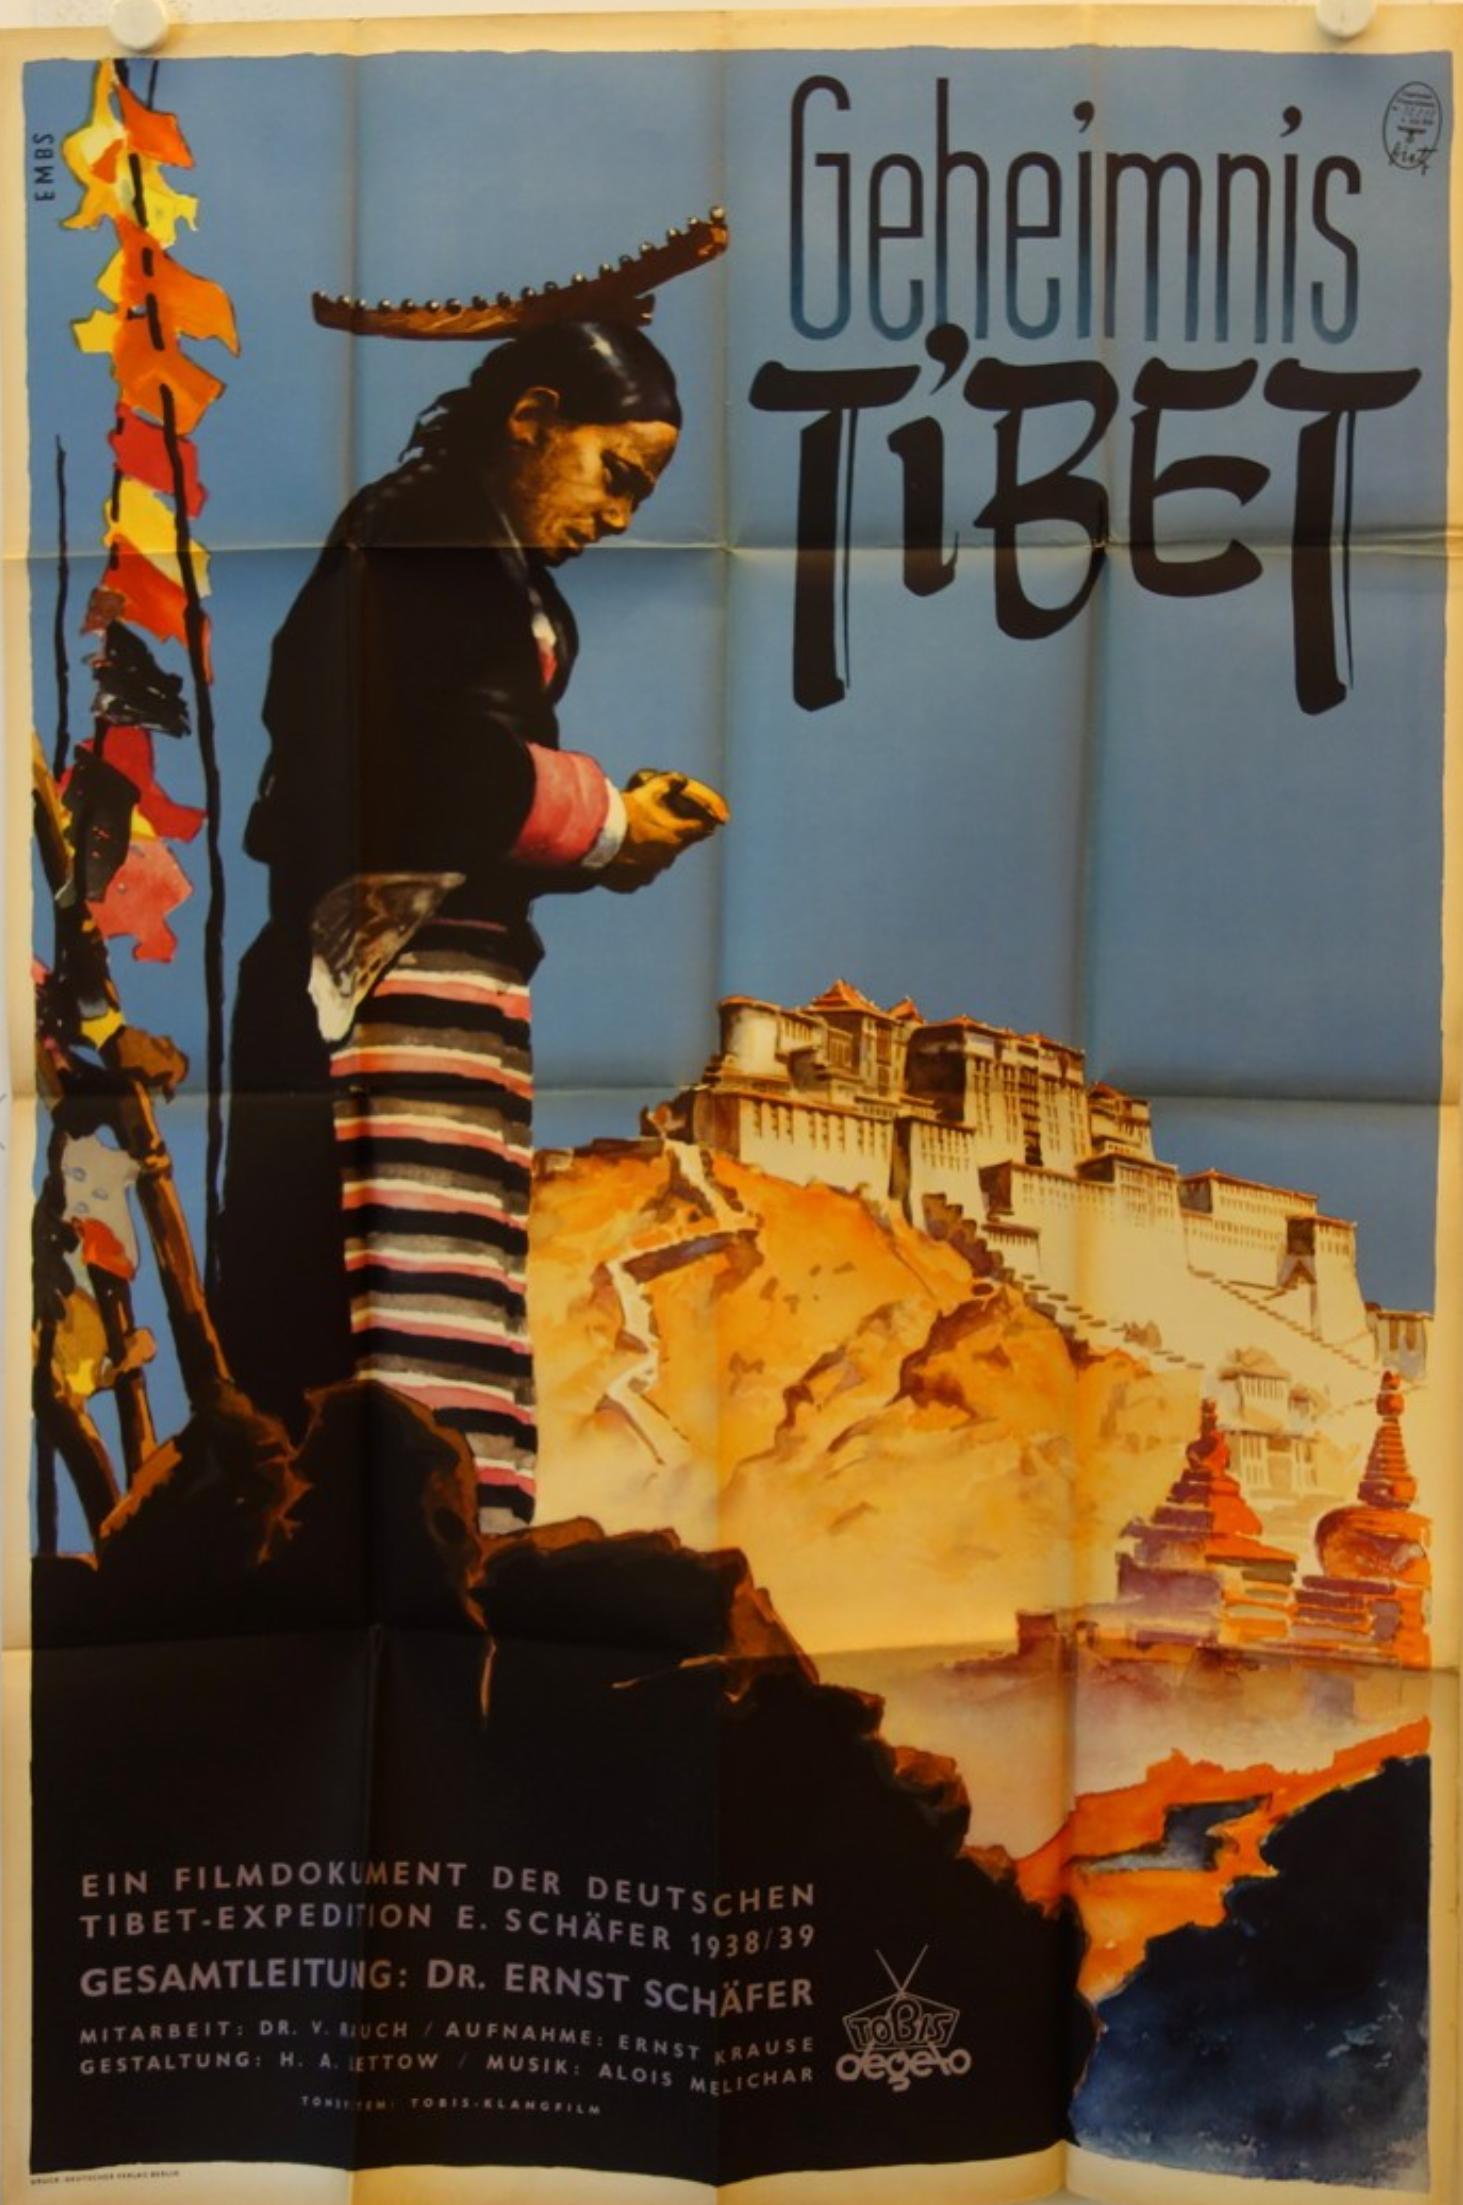 Geheimnis Tibet (1943) Screenshot 1 